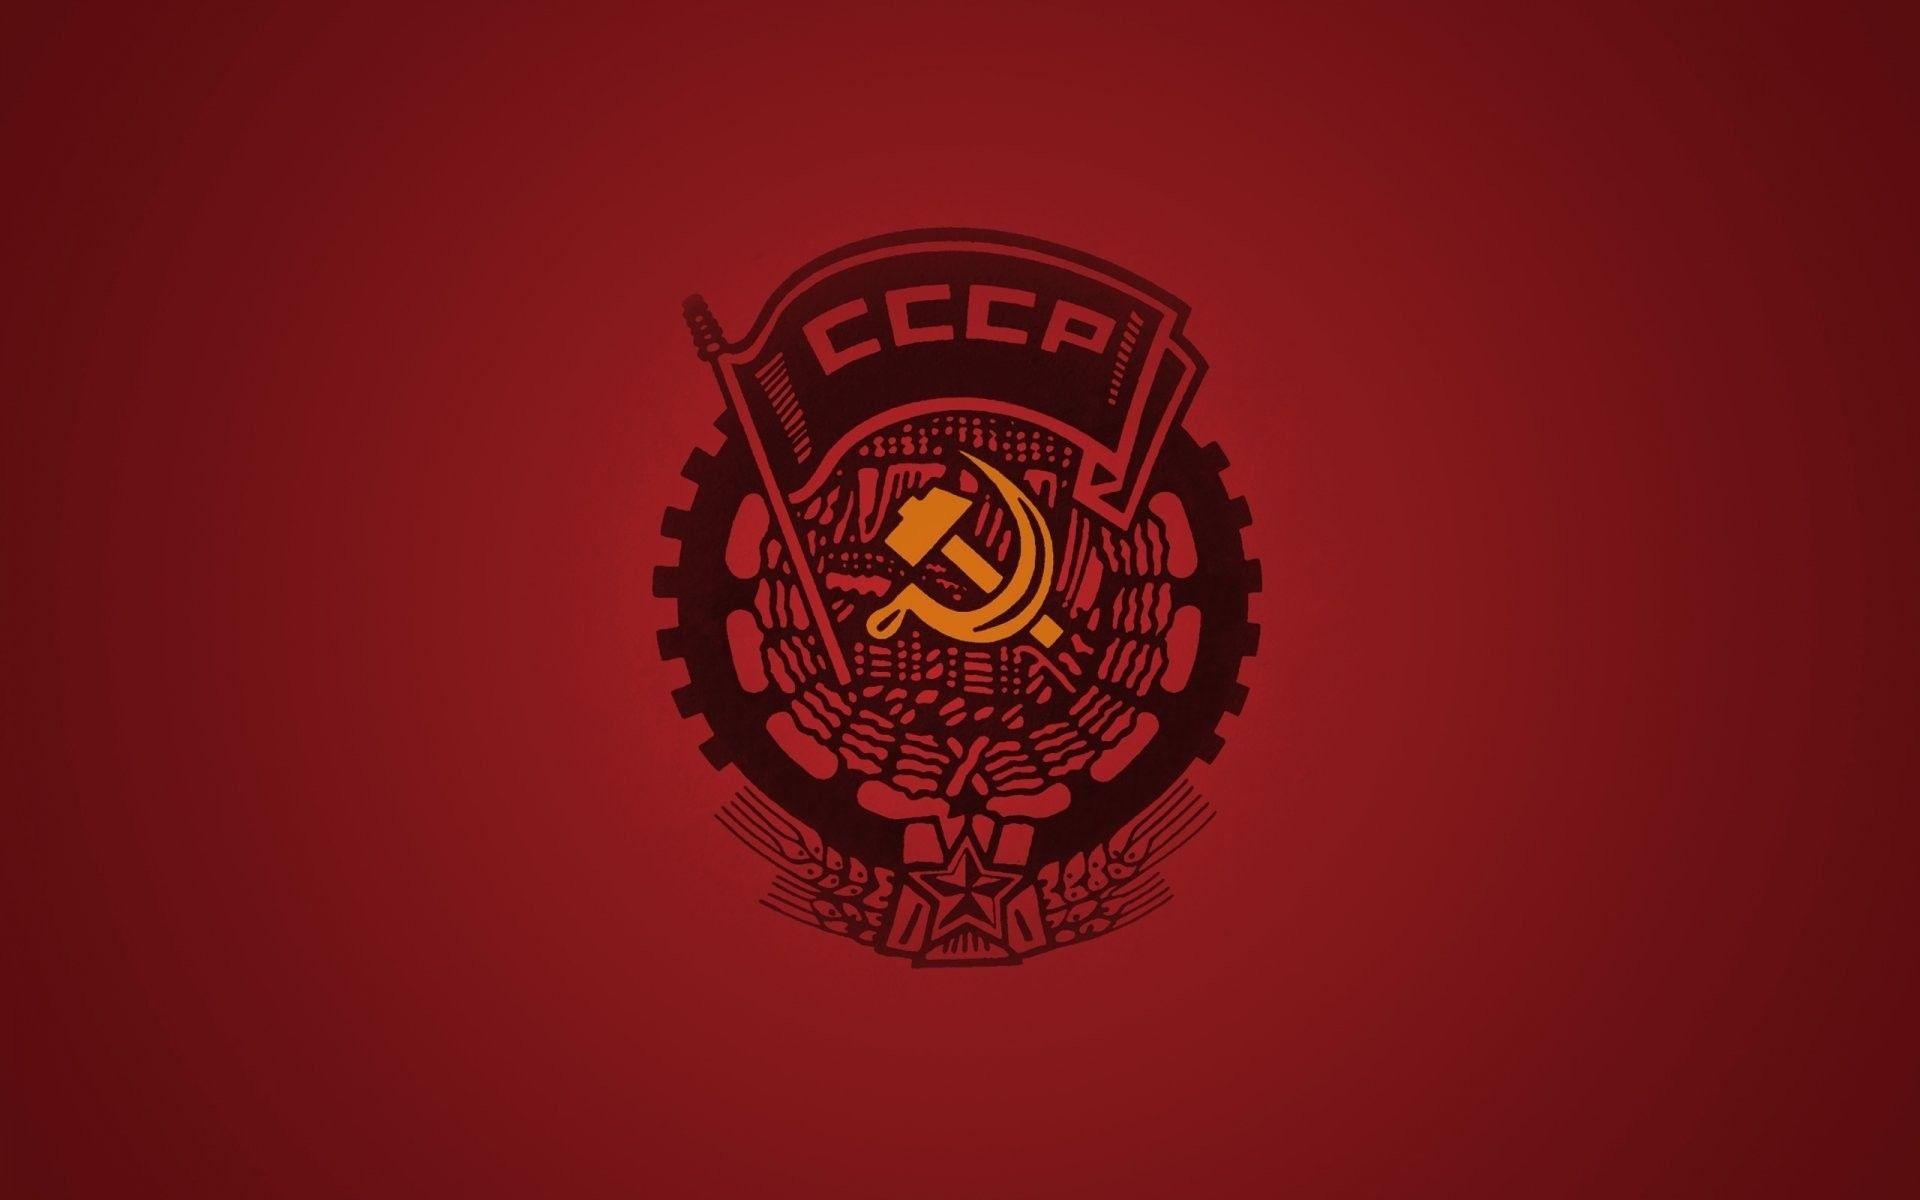 Soviet Wallpaper HD